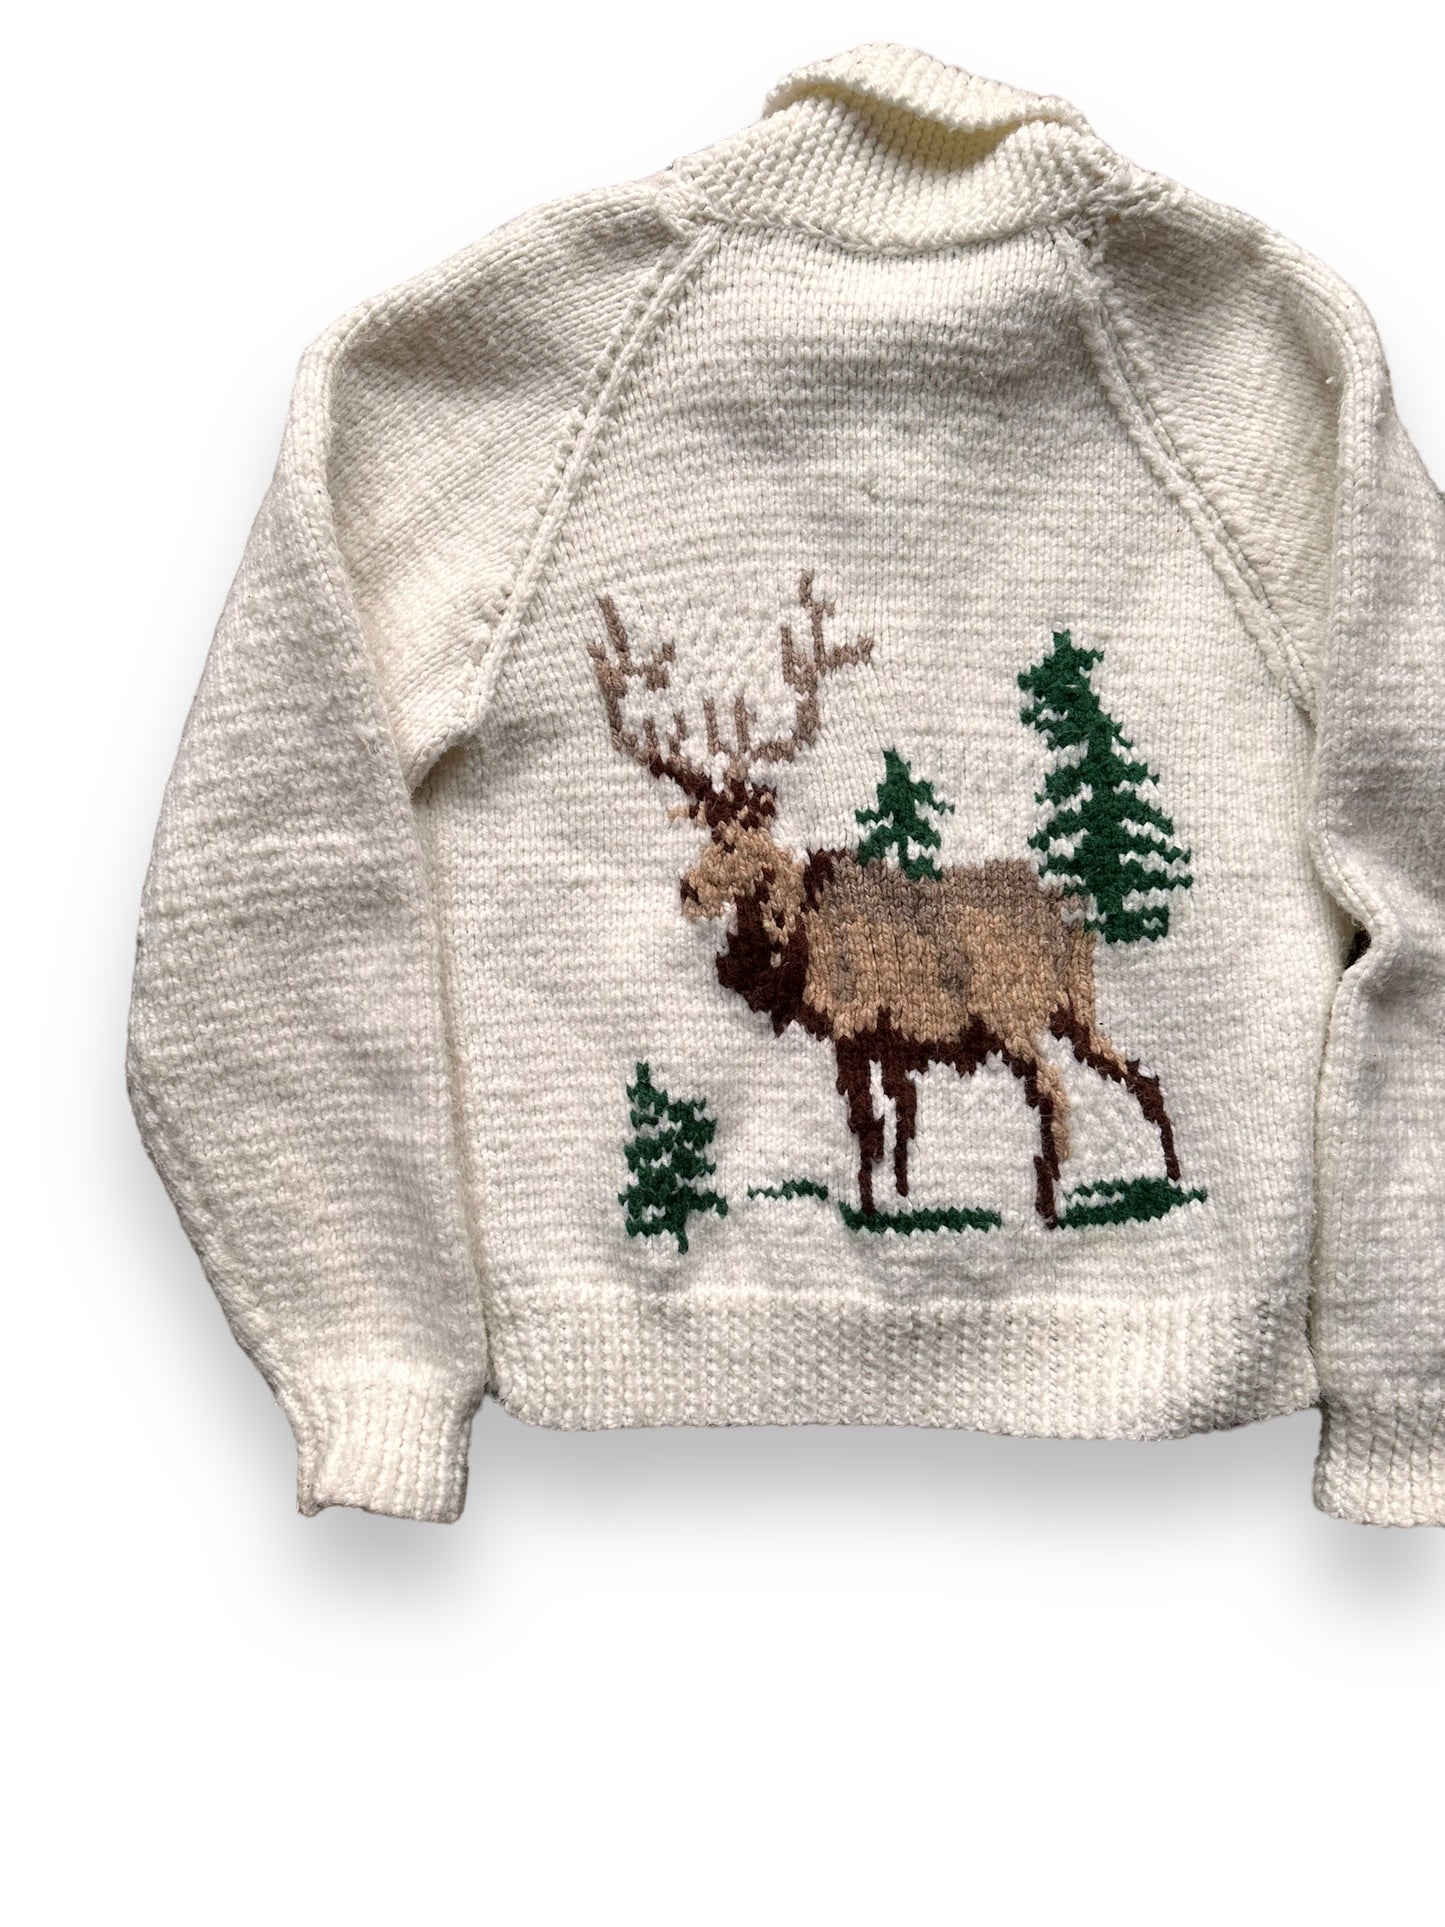 Rear Left View of Vintage Deer Wool Cowichan Style Sweater SZ M | Vintage Cowichan Sweaters Seattle | Barn Owl Vintage Seattle